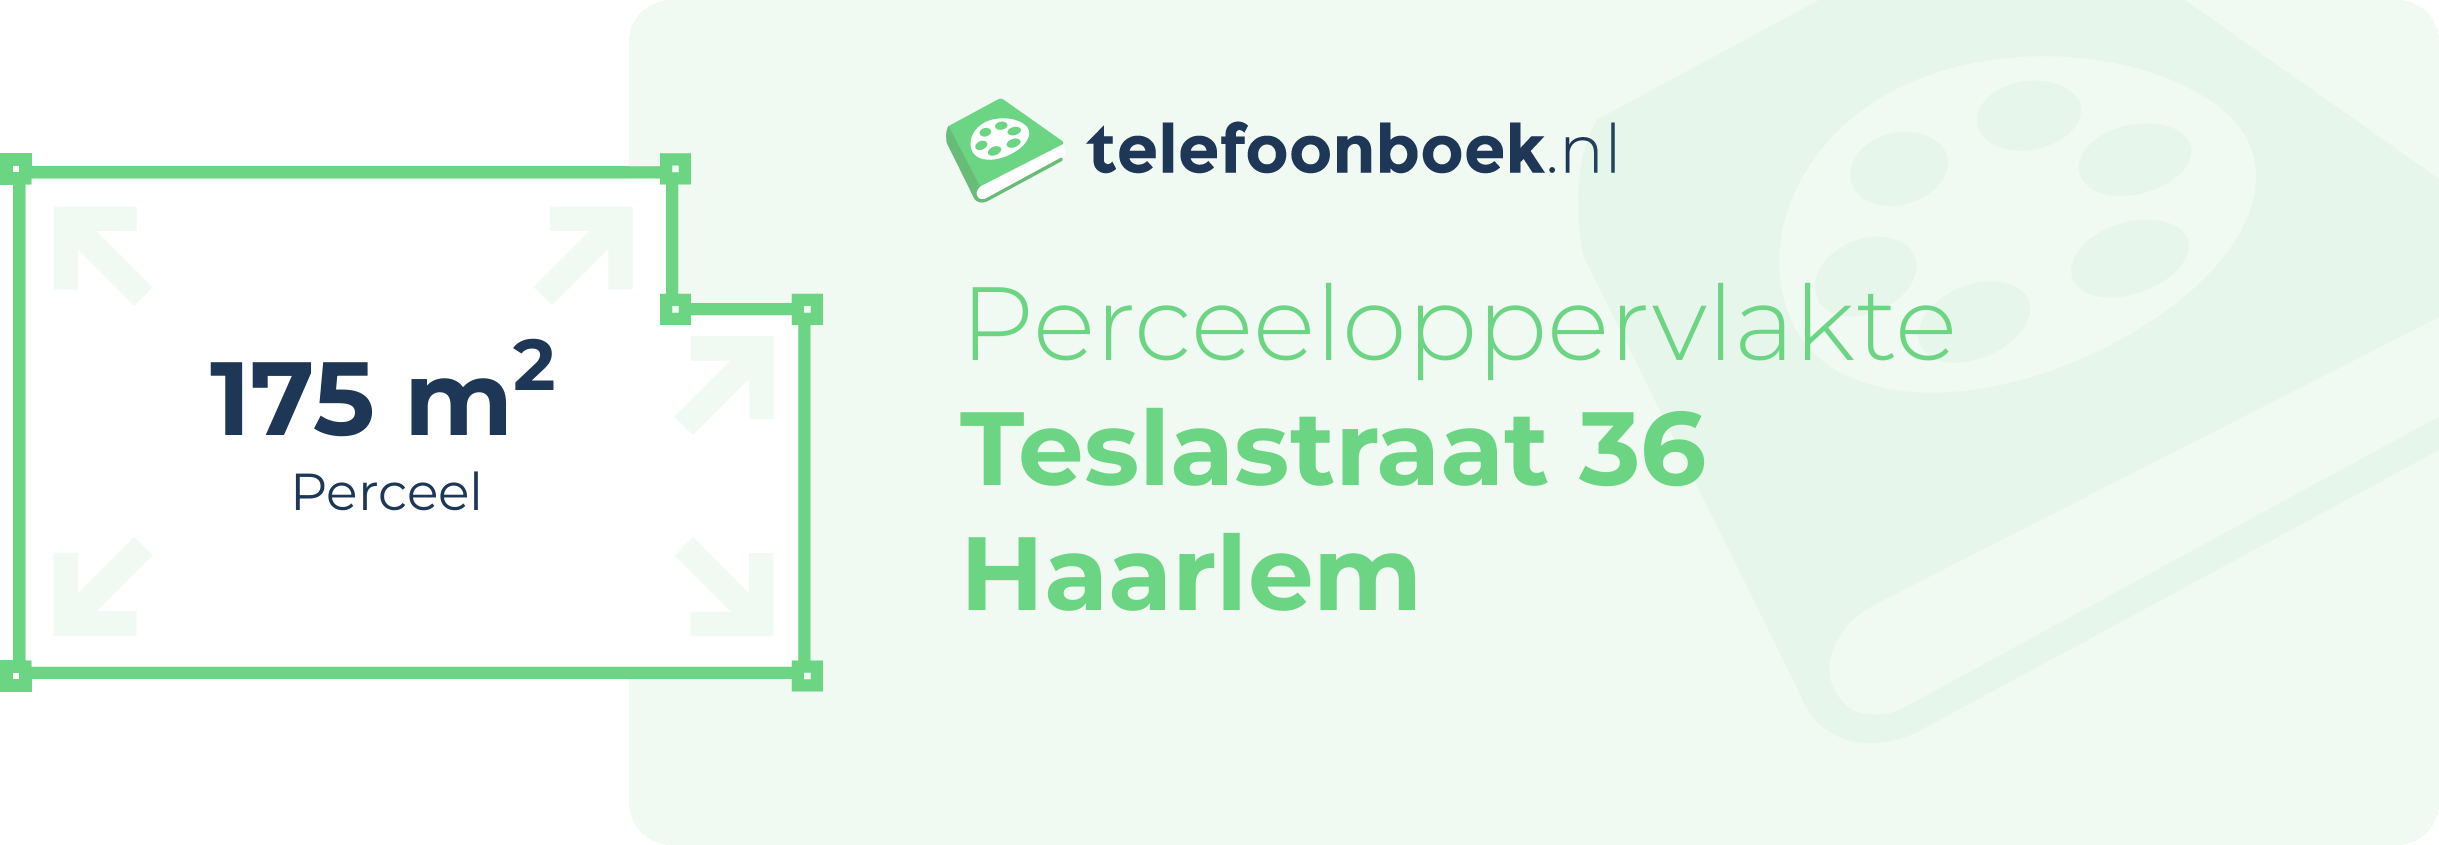 Perceeloppervlakte Teslastraat 36 Haarlem